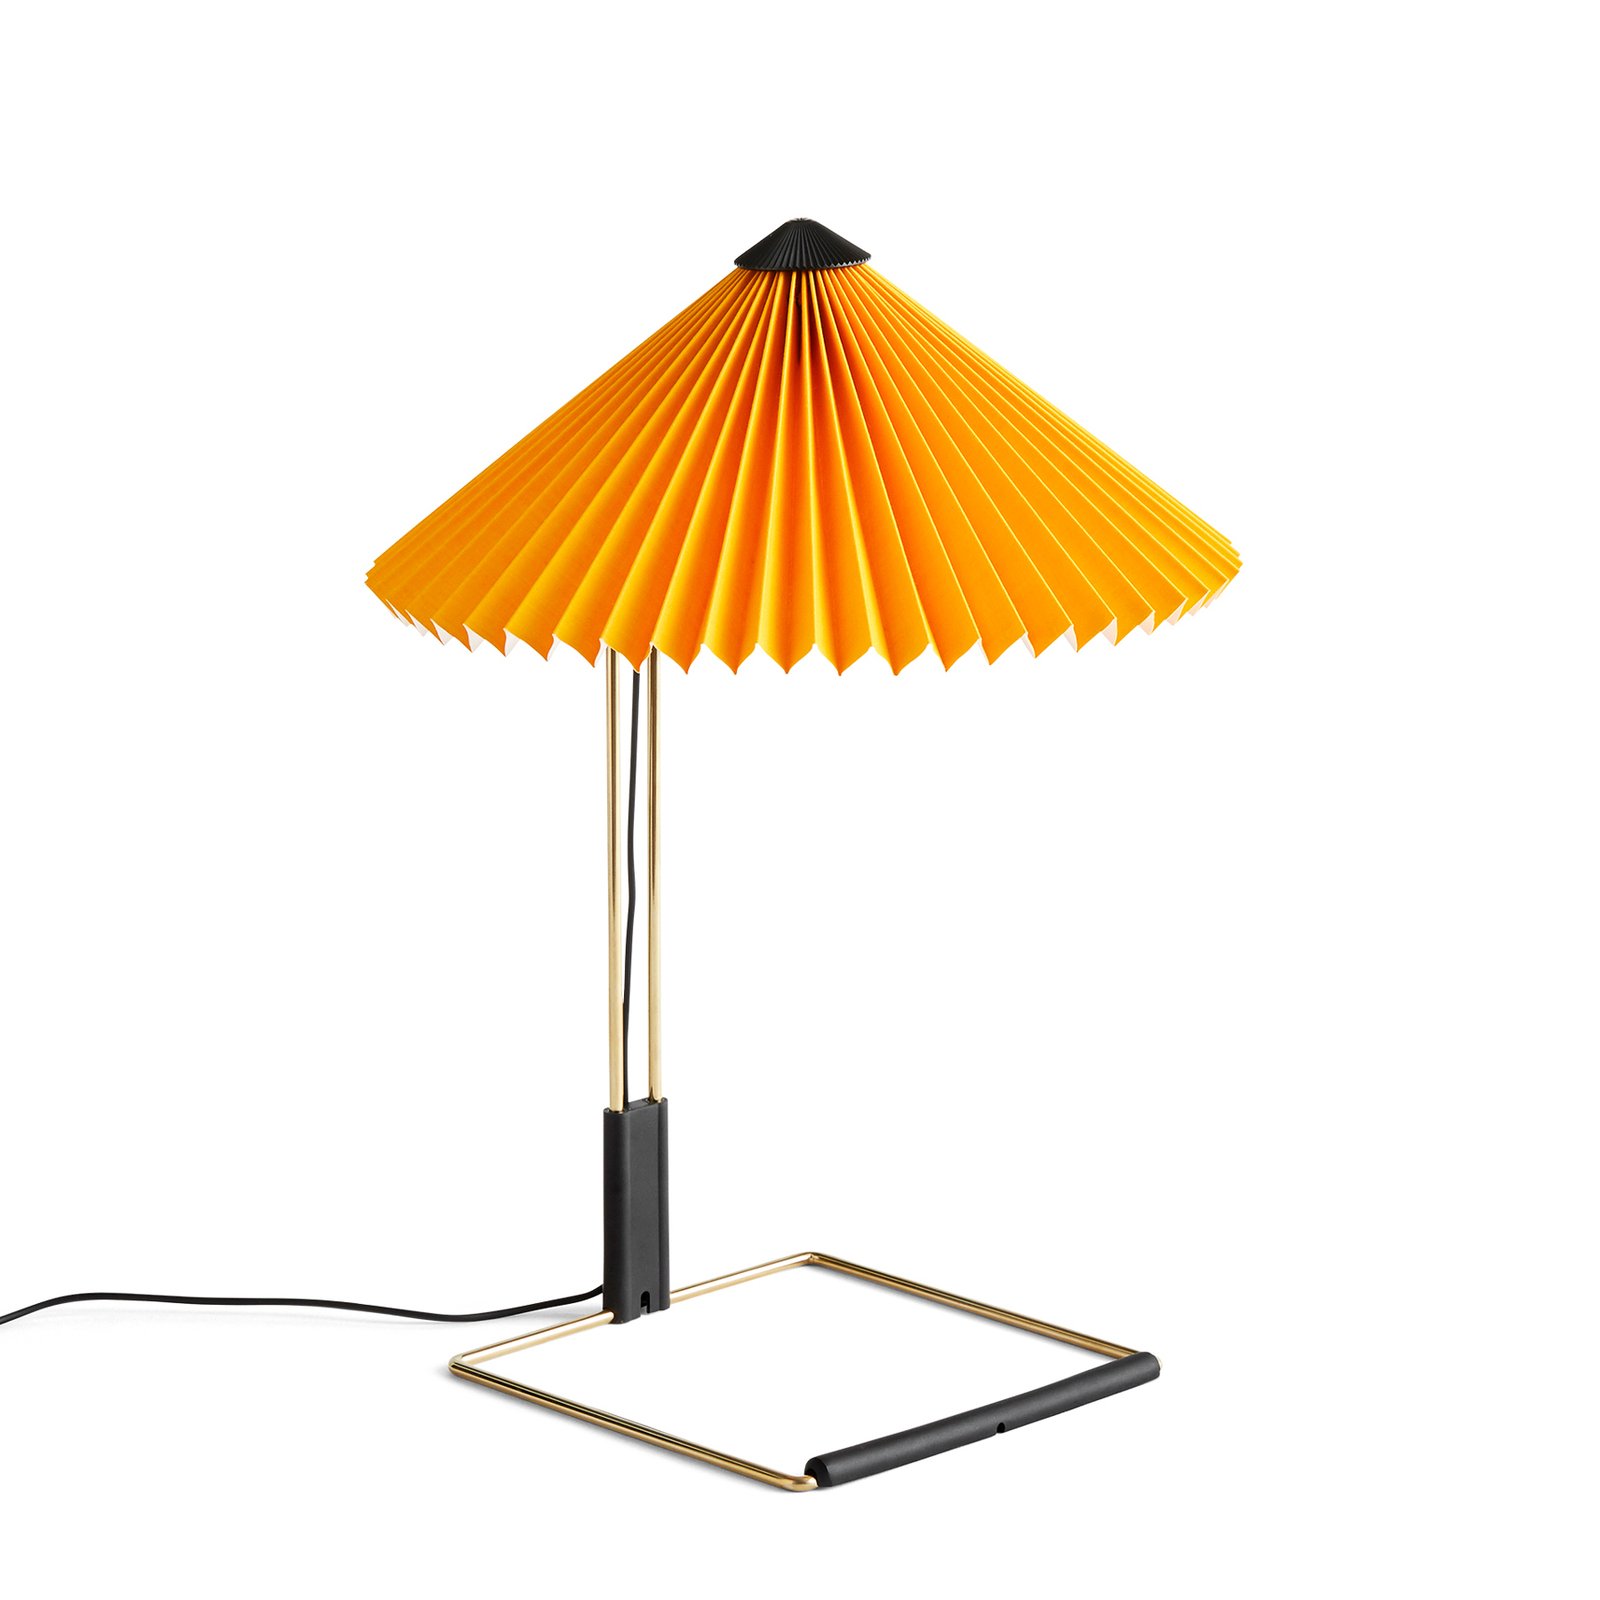 HAY Matin 300 lampa stołowa LED plisowana, zółta